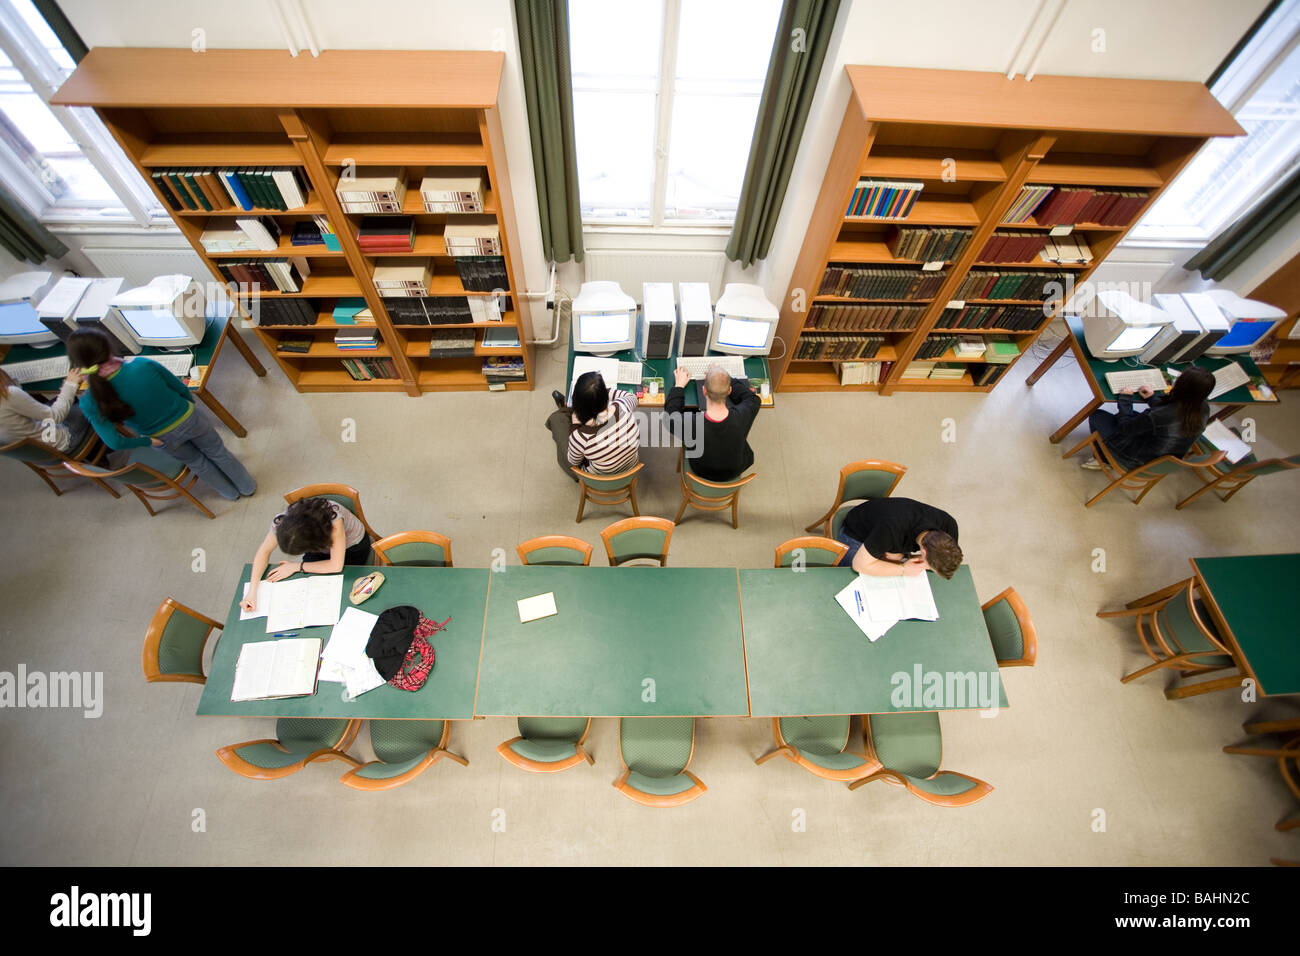 Schüler in einer Schule Bibliothek obere Ansicht Stockfoto